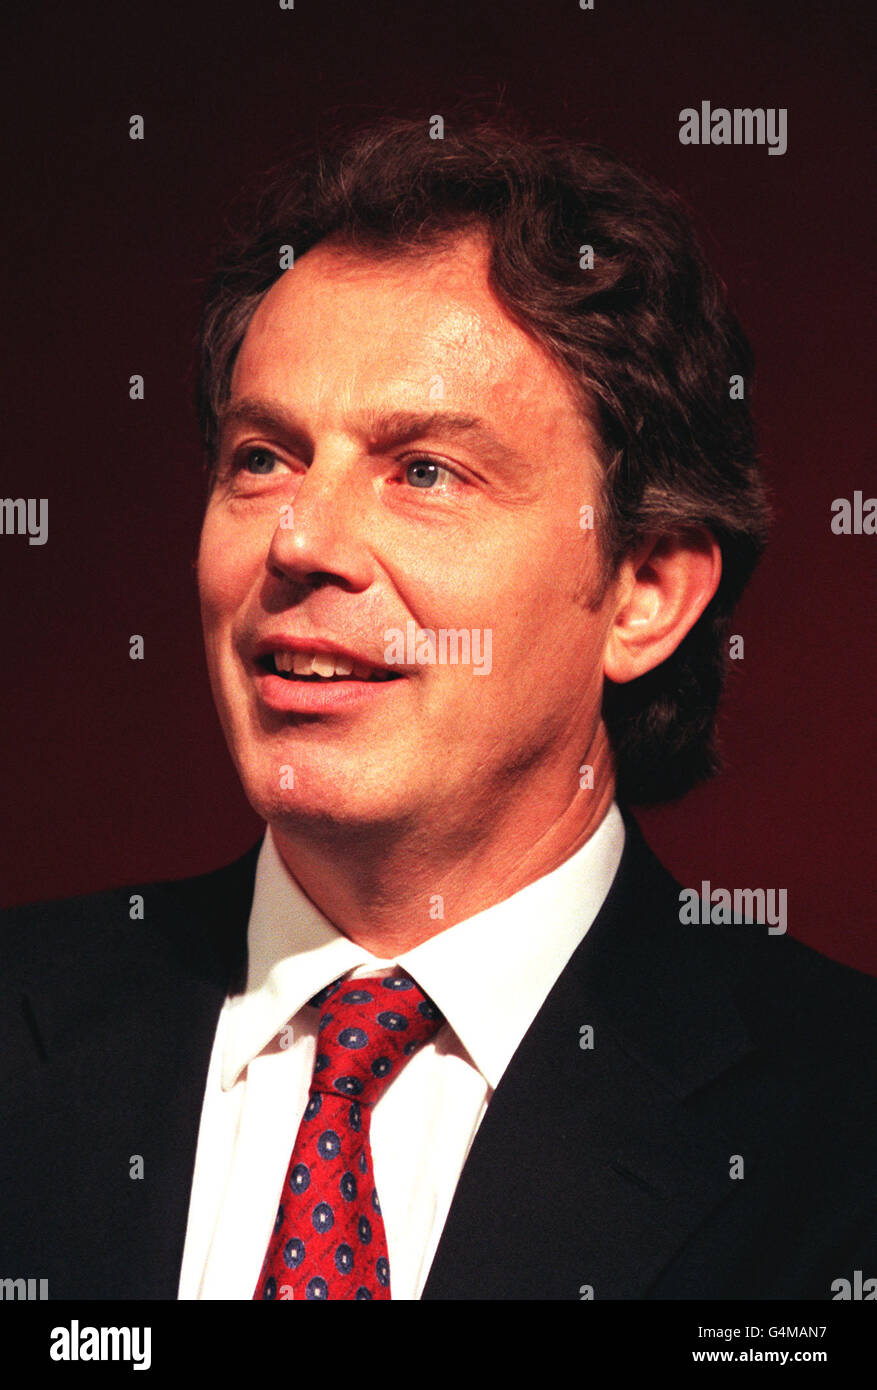 Tony Blair at Millbank Stock Photo